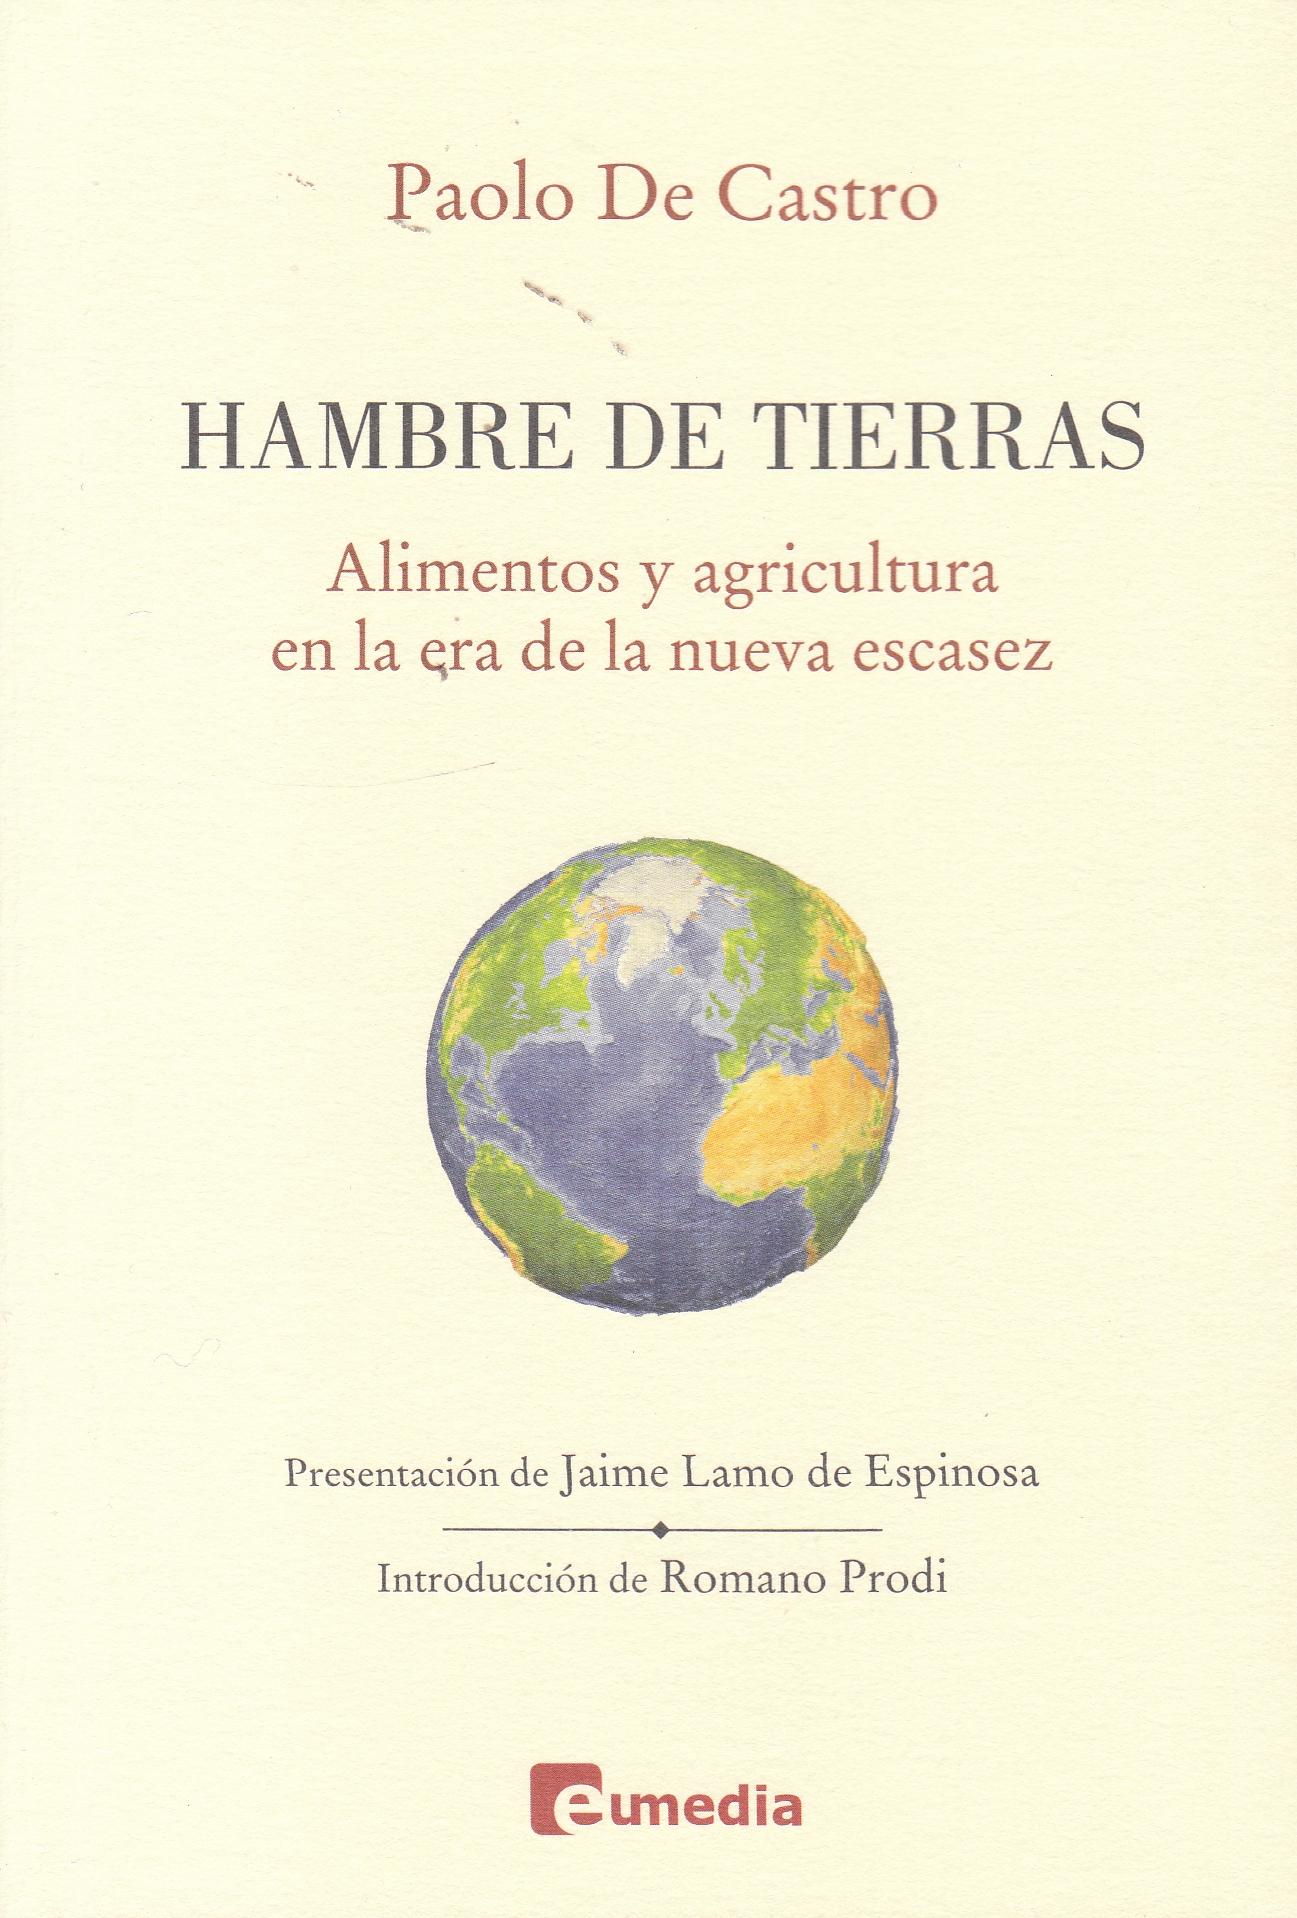 Hambre de Tierras "Alimentos y agricultura en la era de la escasez"